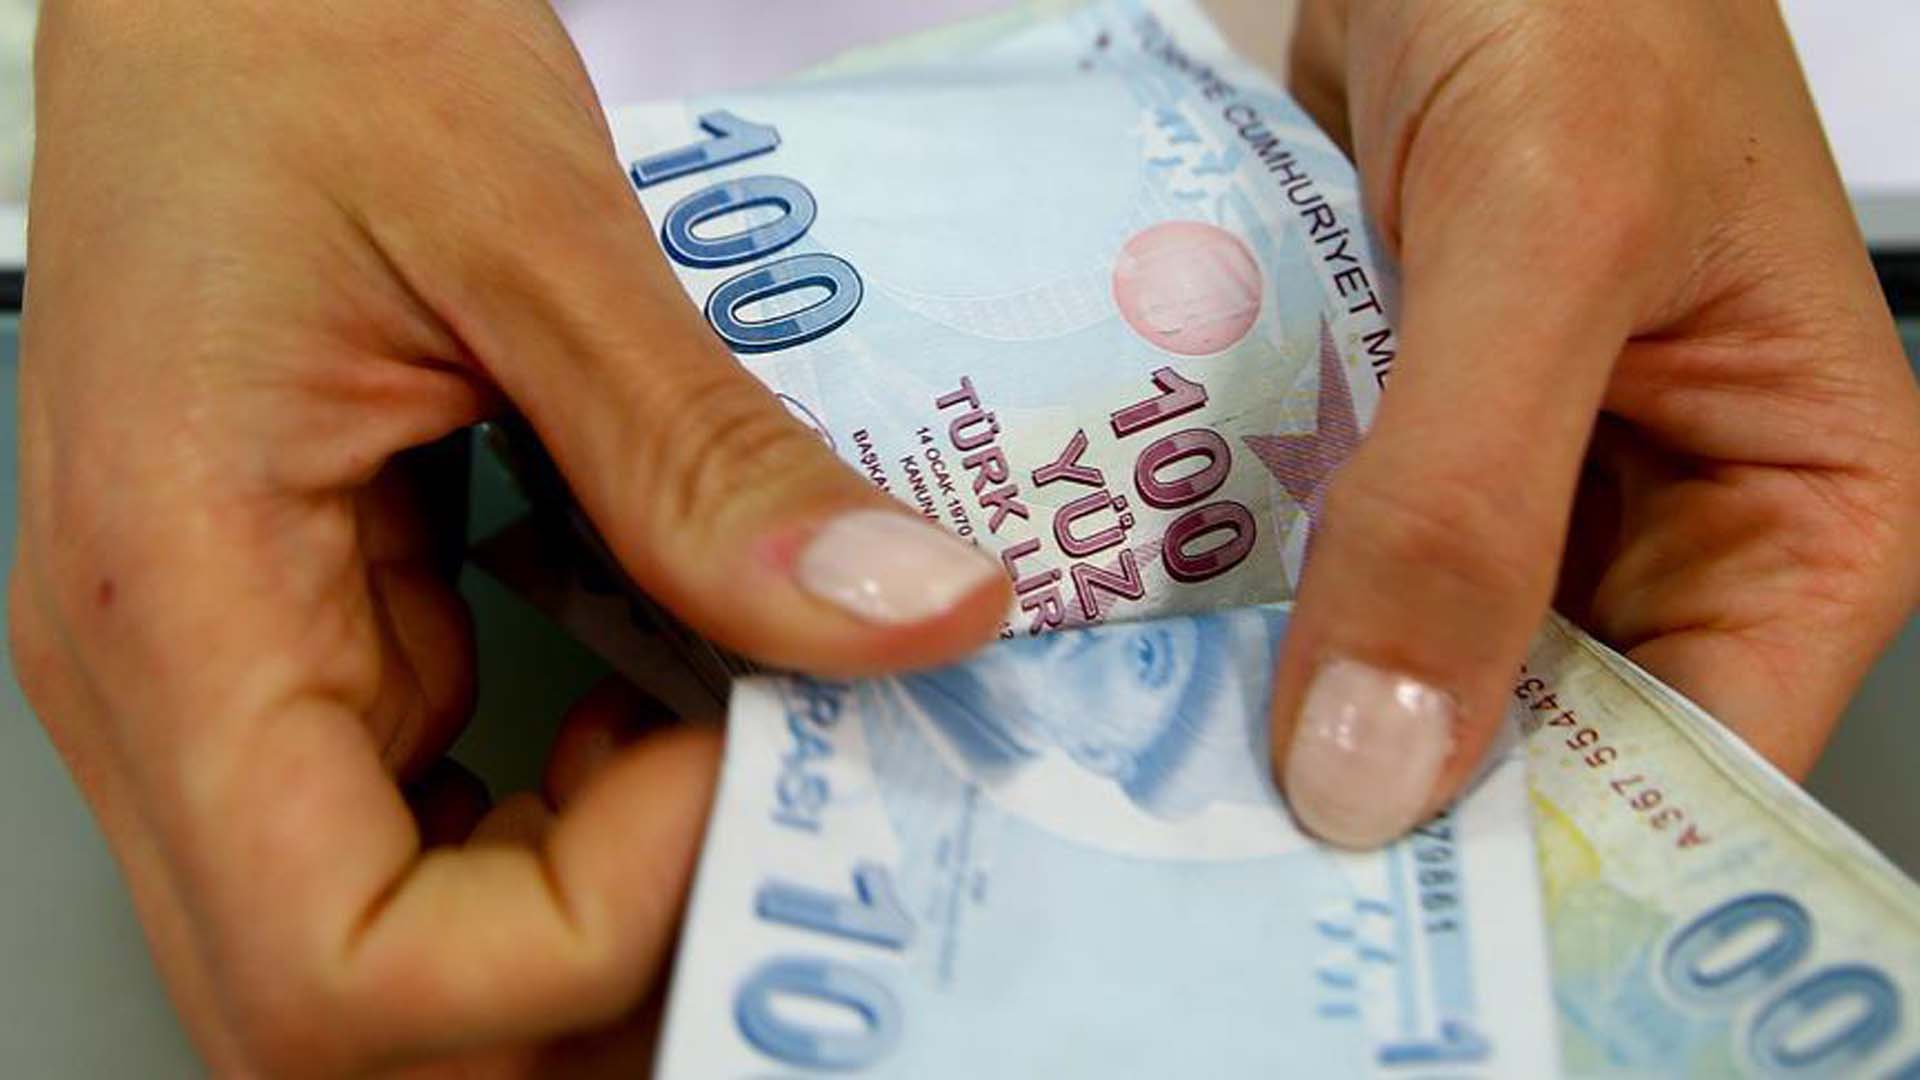 TOBB Başkanı Rifat Hisarcıklıoğlu'ndan asgari ücret çıkışı: Enflasyon oranı üzerinde artmalı dedi, üç önerisini sıraladı 